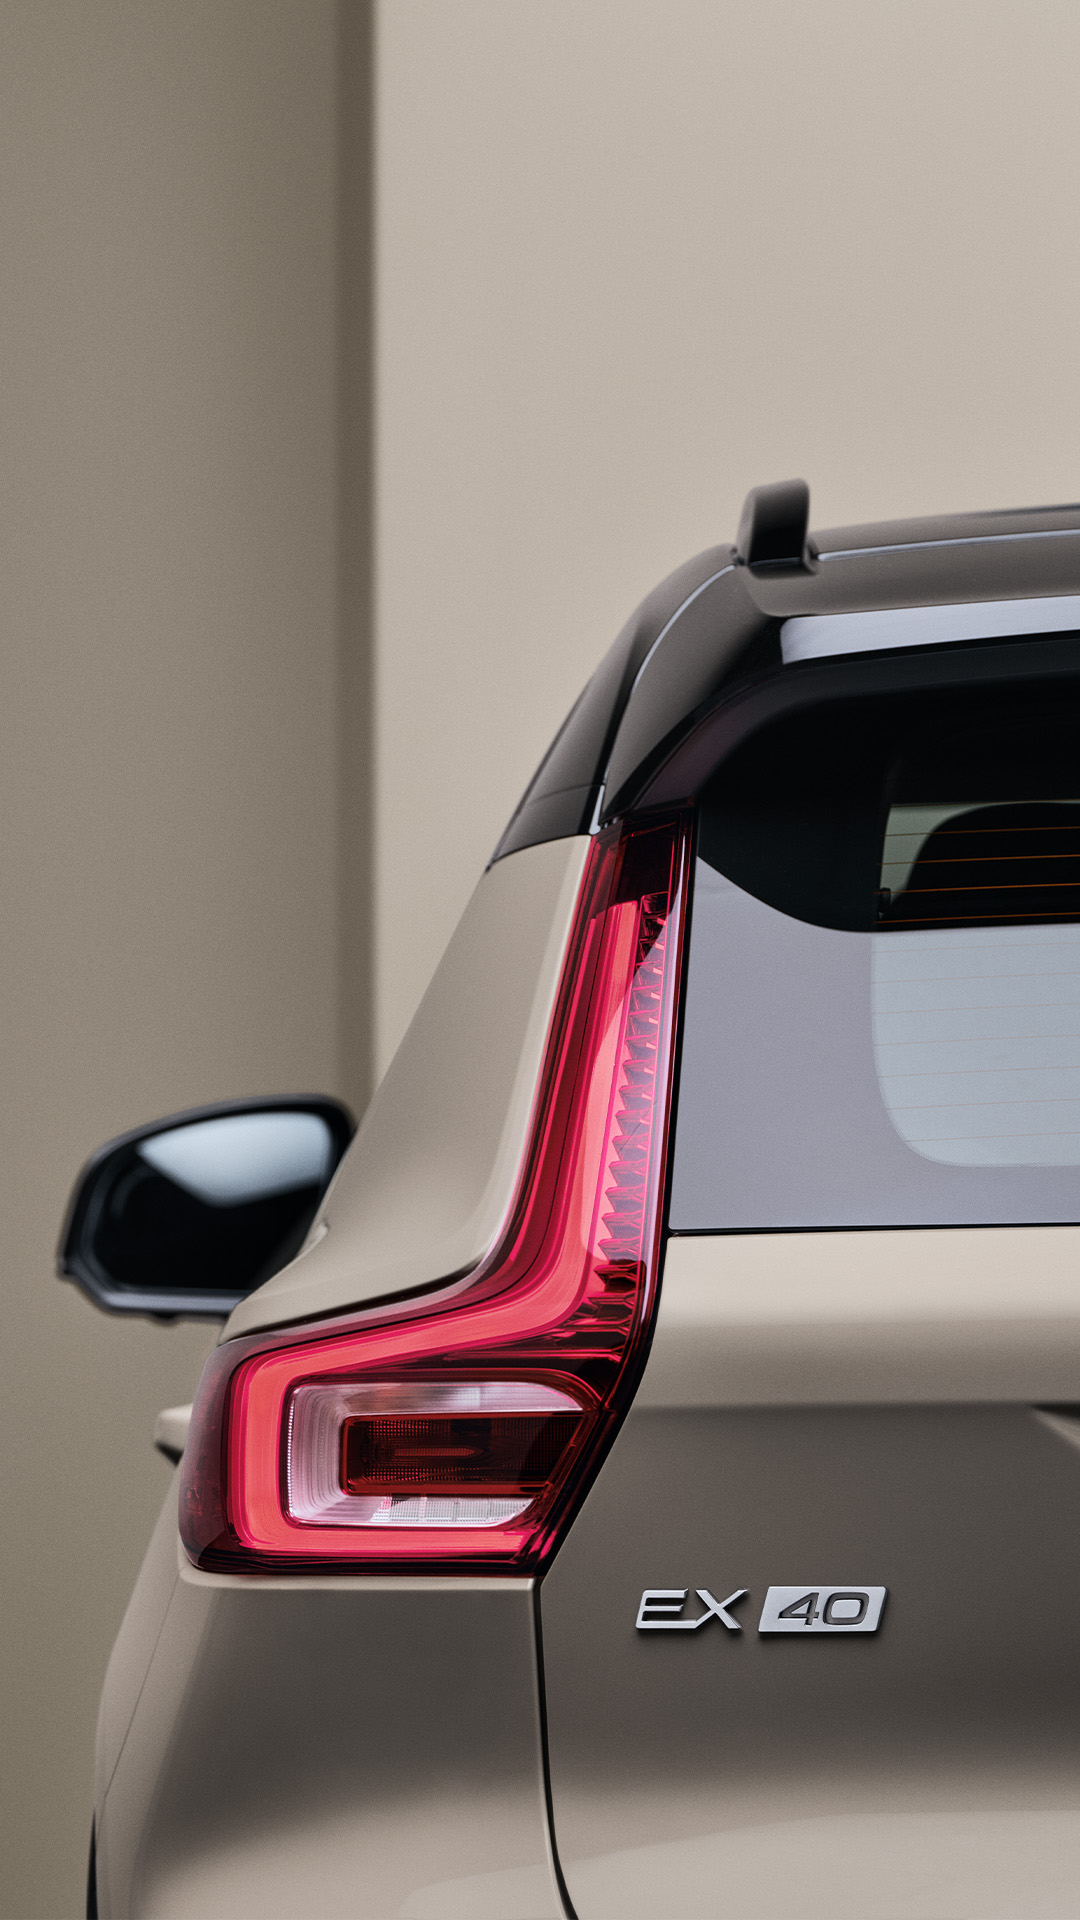 Detaljbilde av ryggelys og bakside på en sandfarget Volvo EX40